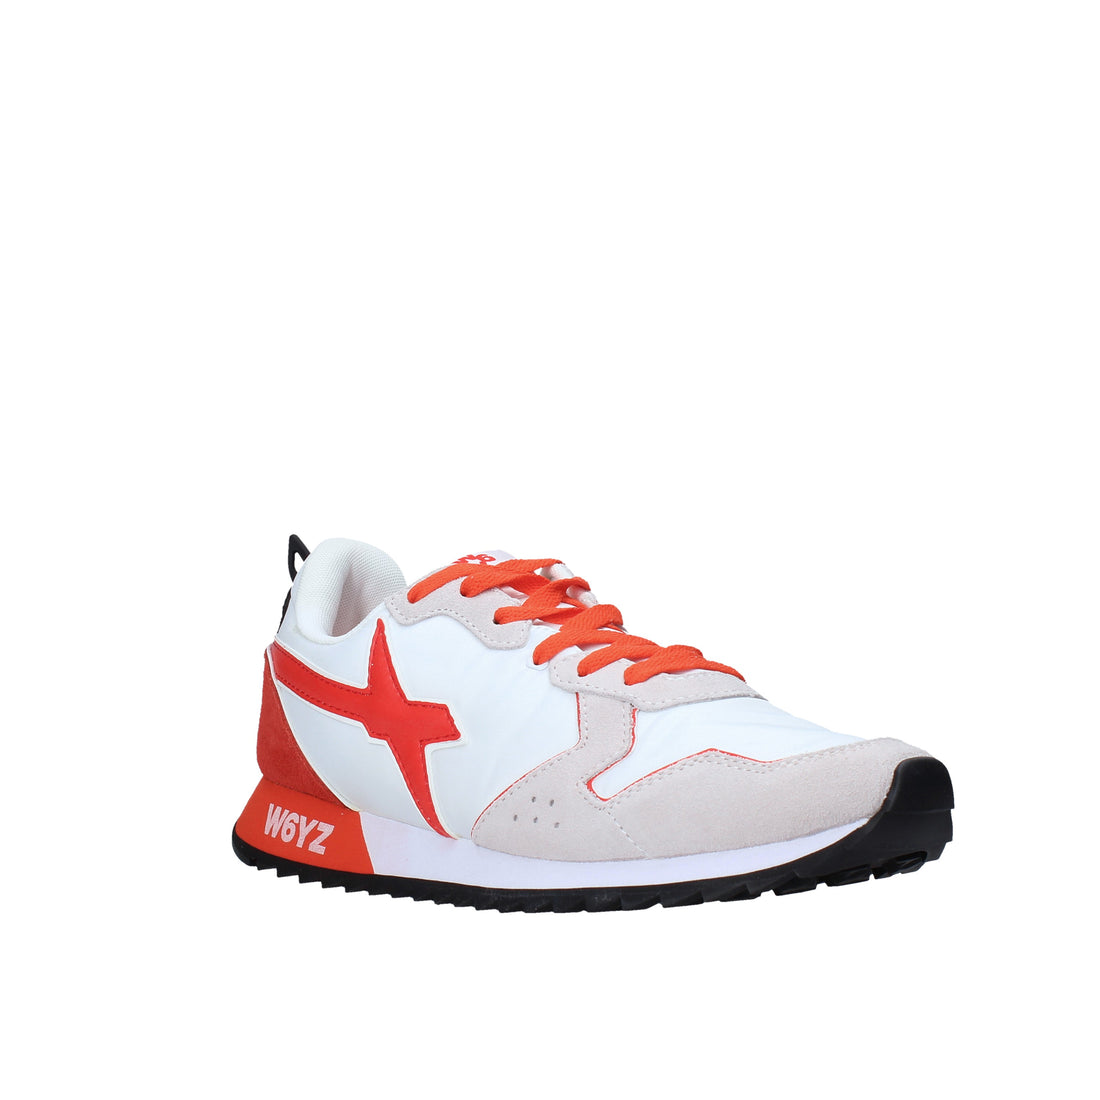 Sneakers Bianco Rosso W6yz